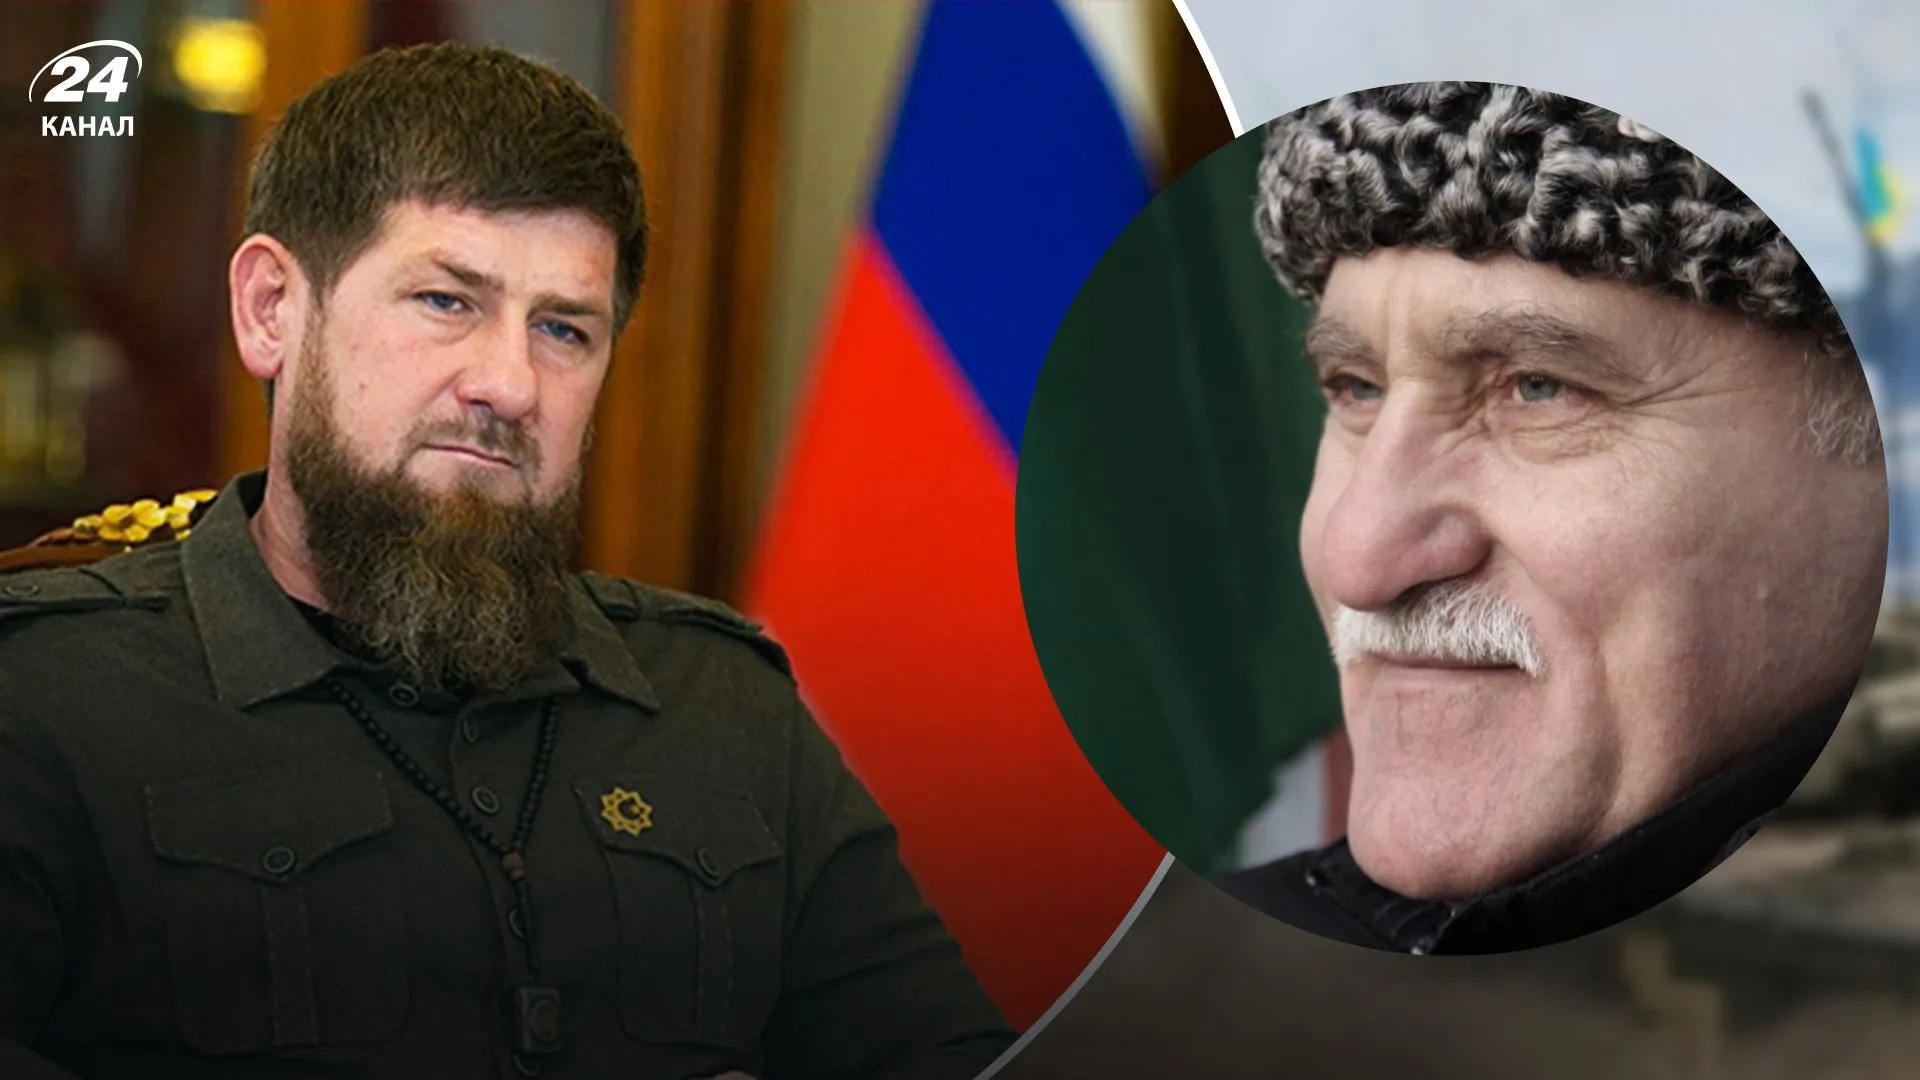 Участник чечни. Бородатый чеченец. Ветераны Чеченской войны. Чеченец с бородой. Чеченская борода.